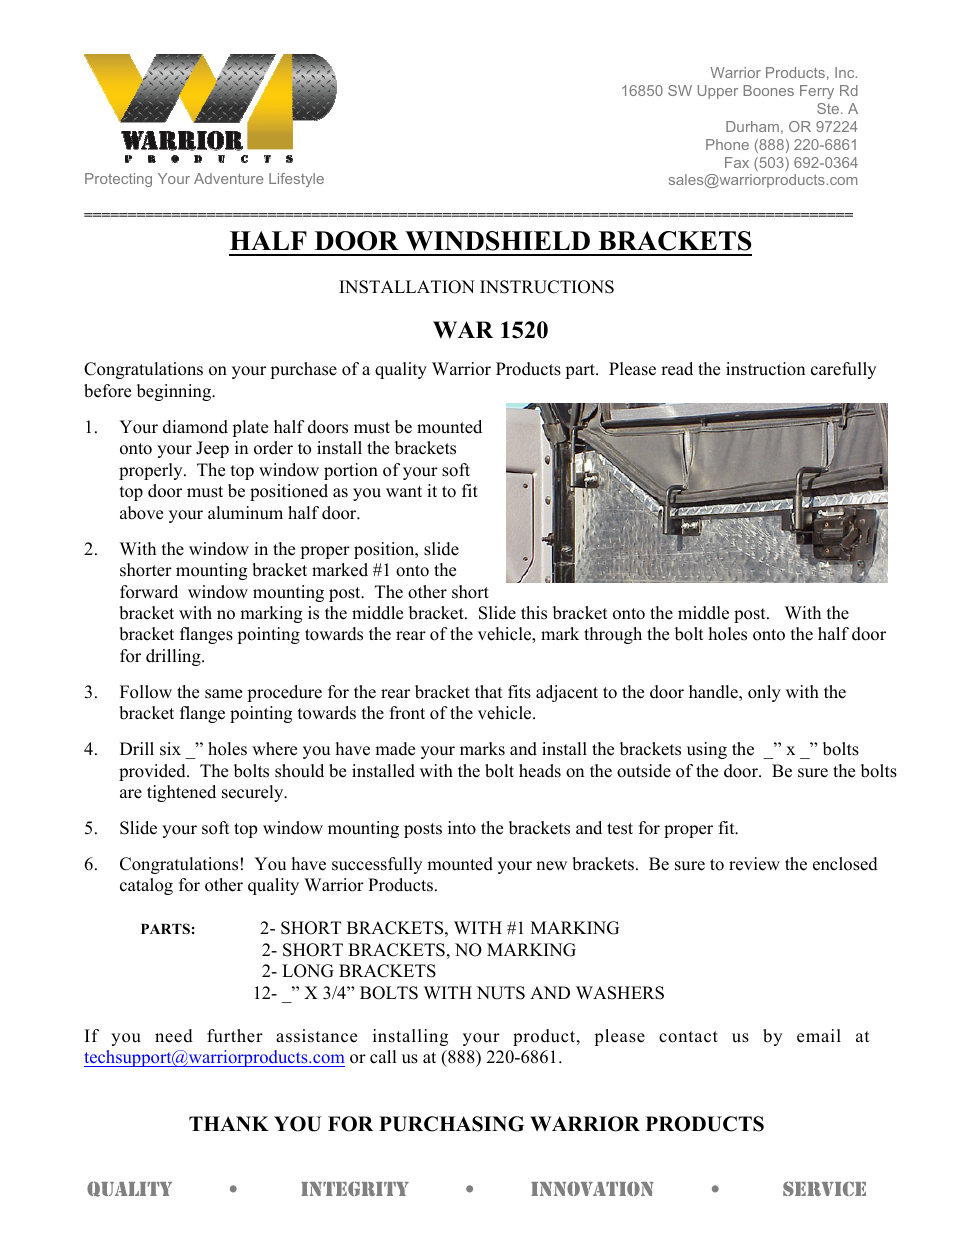 1520 HALF DOOR WINDSHIELD BRACKETS (1997 – 2006 Jeep TJ Wrangler)